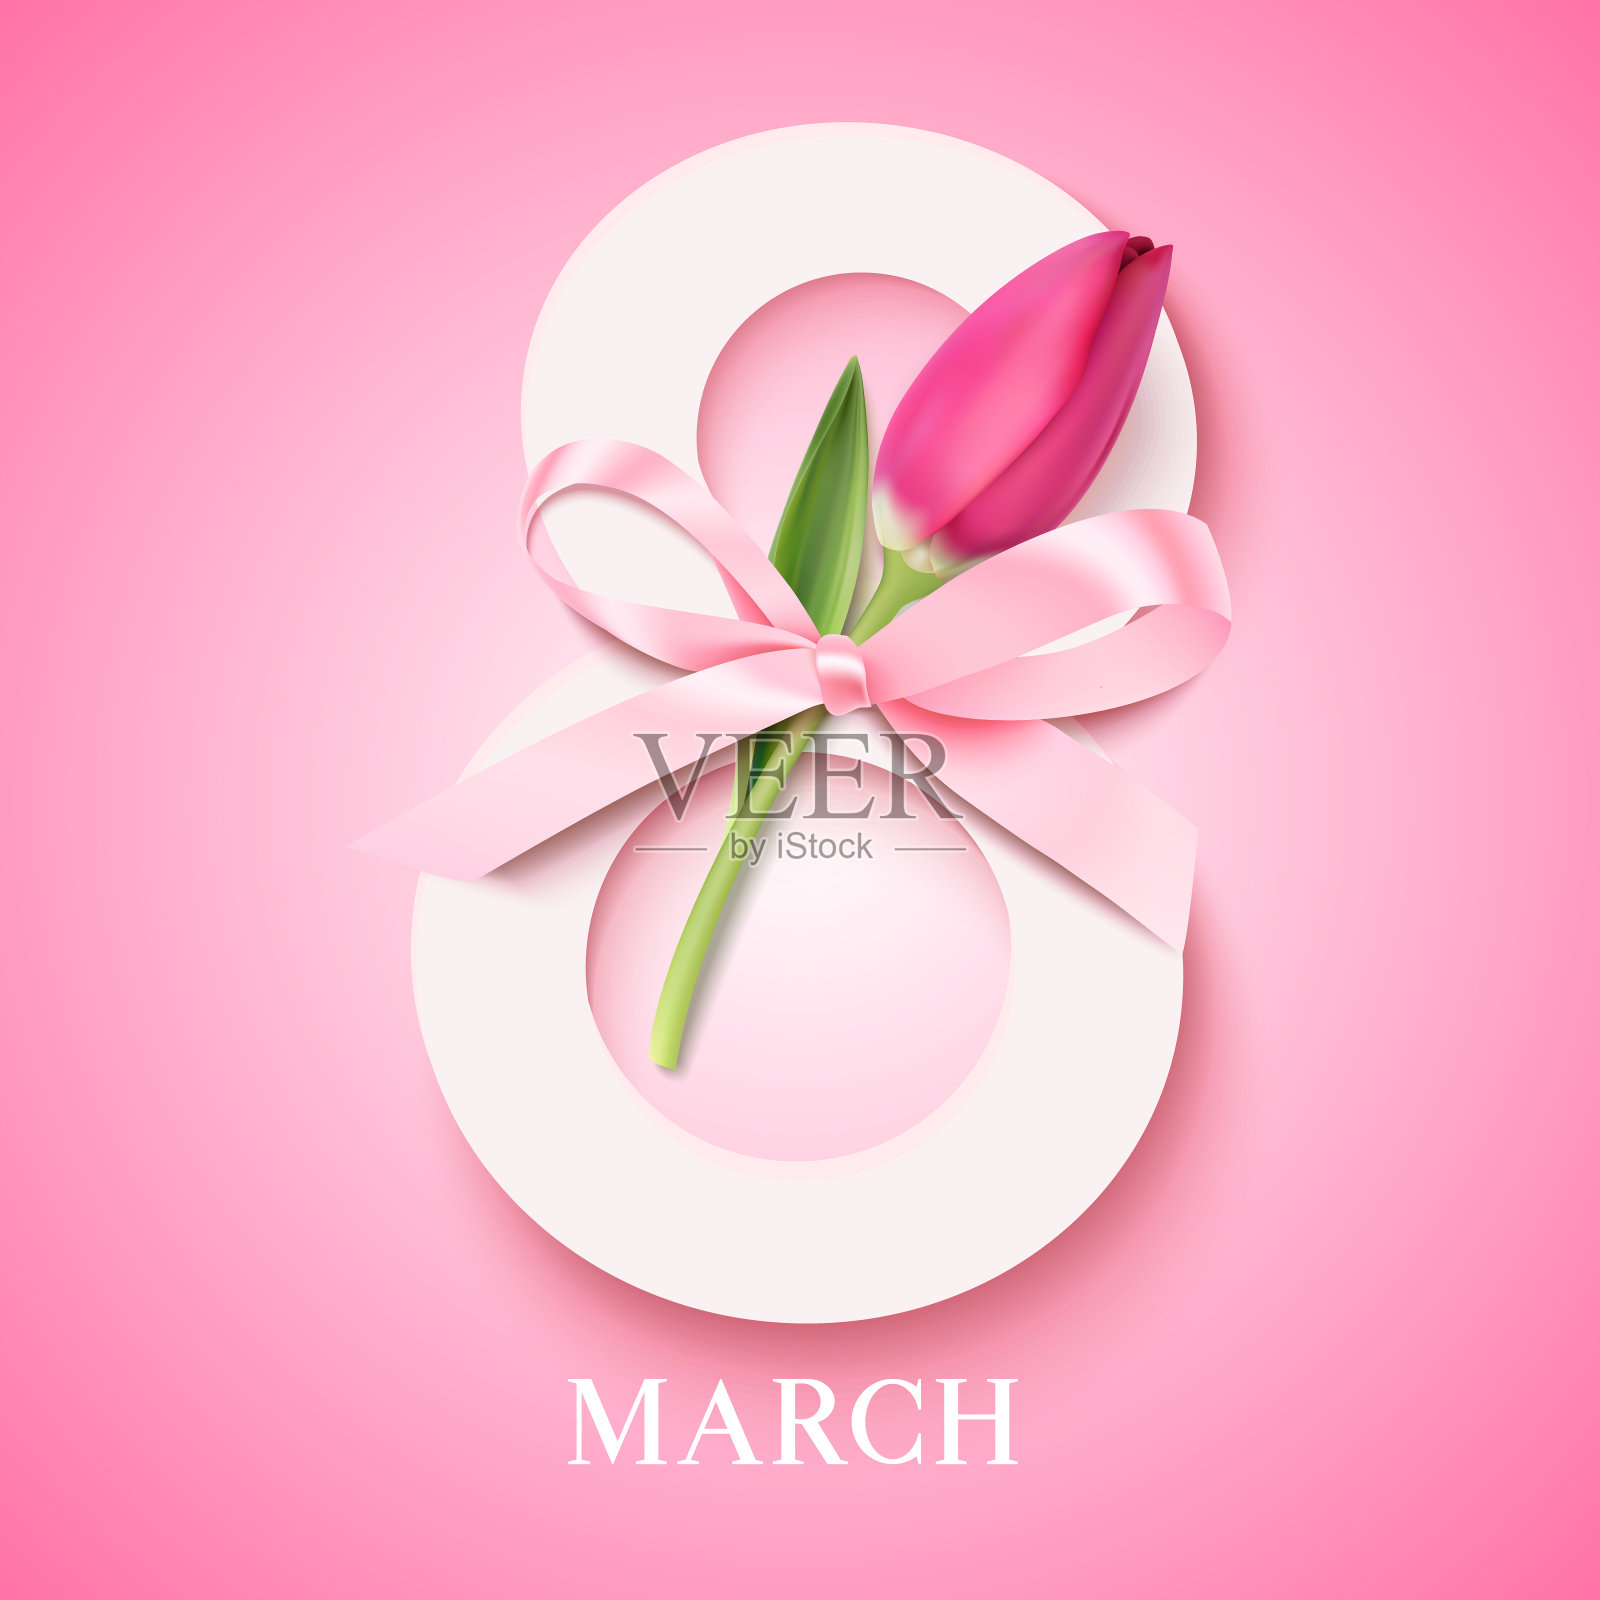 3月8日。国际妇女节的概念插画图片素材